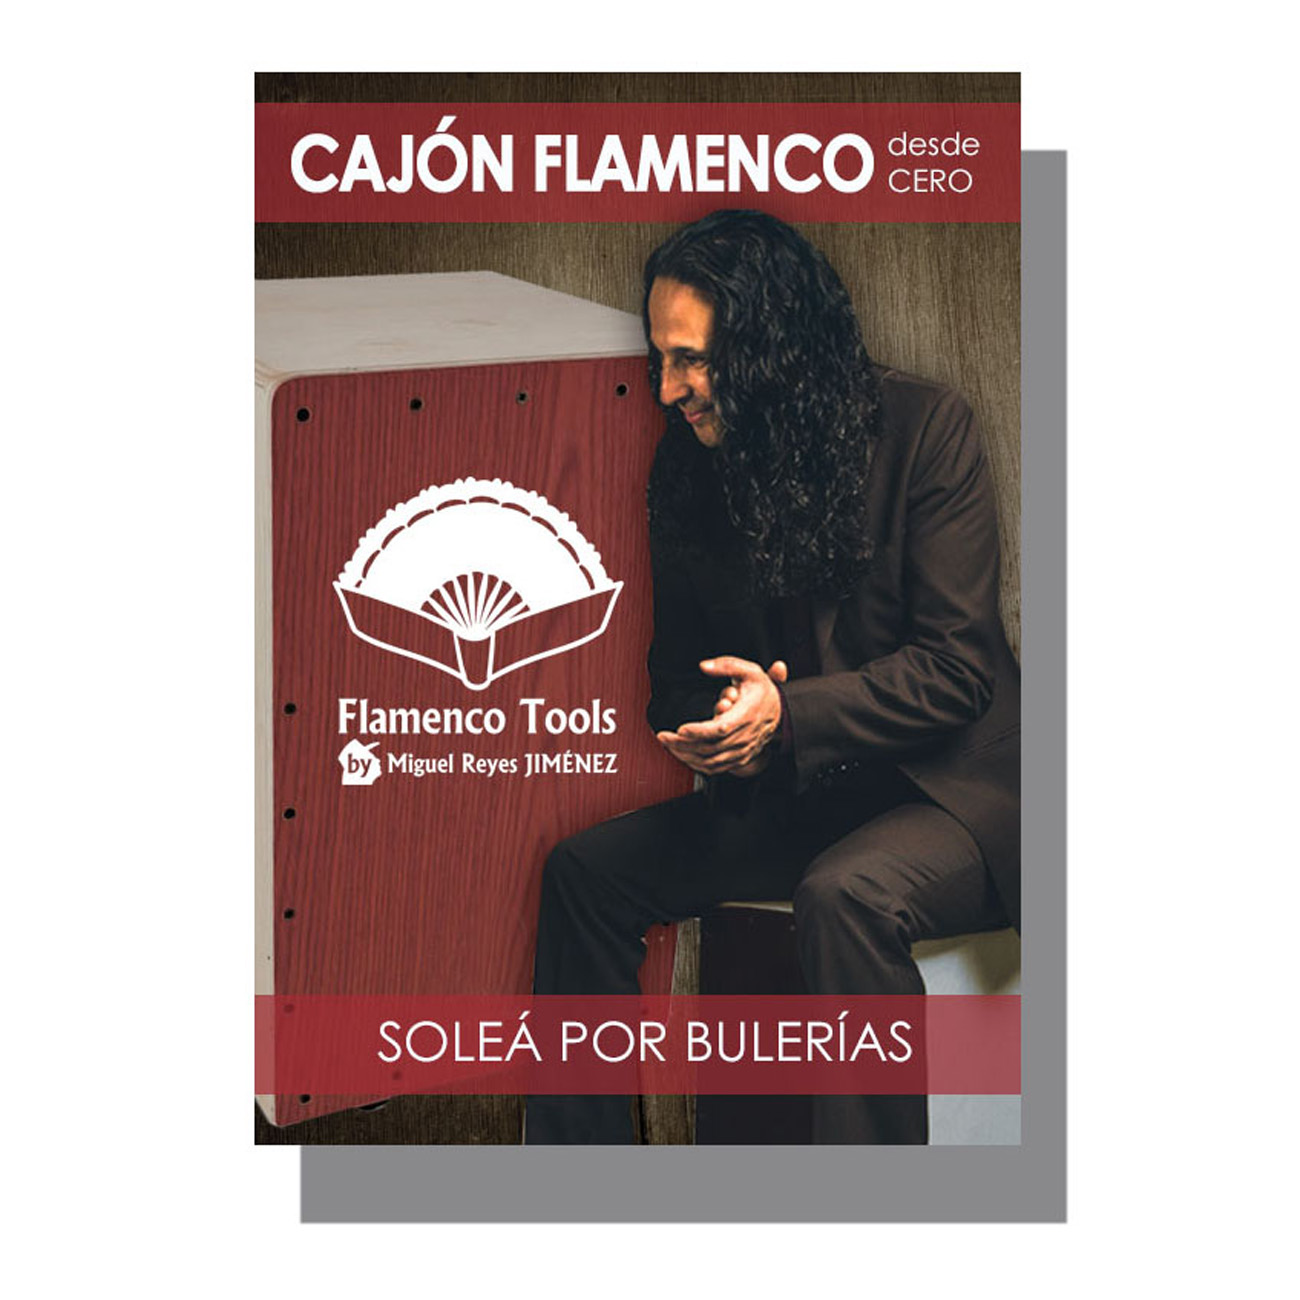 masculino lobo máscara Video Cajón Flamenco desde cero: Soleá por Bulerías / Cajon Flamenco for  beginners video: Soleá por bulerías - FlamencoTools